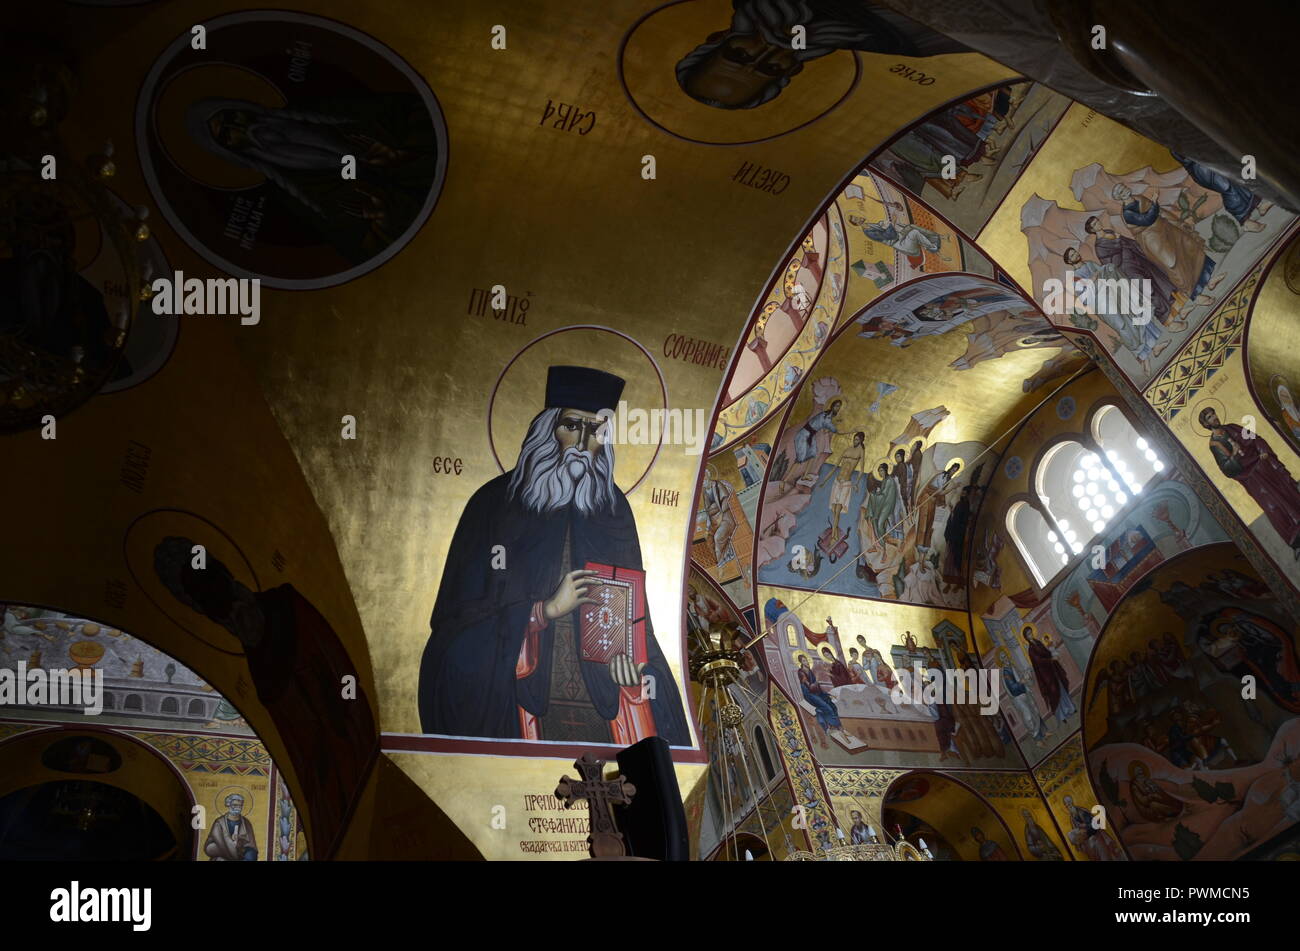 Innenansicht der Kathedrale der Auferstehung Christi, Podgorica, Montenegro Stockfoto